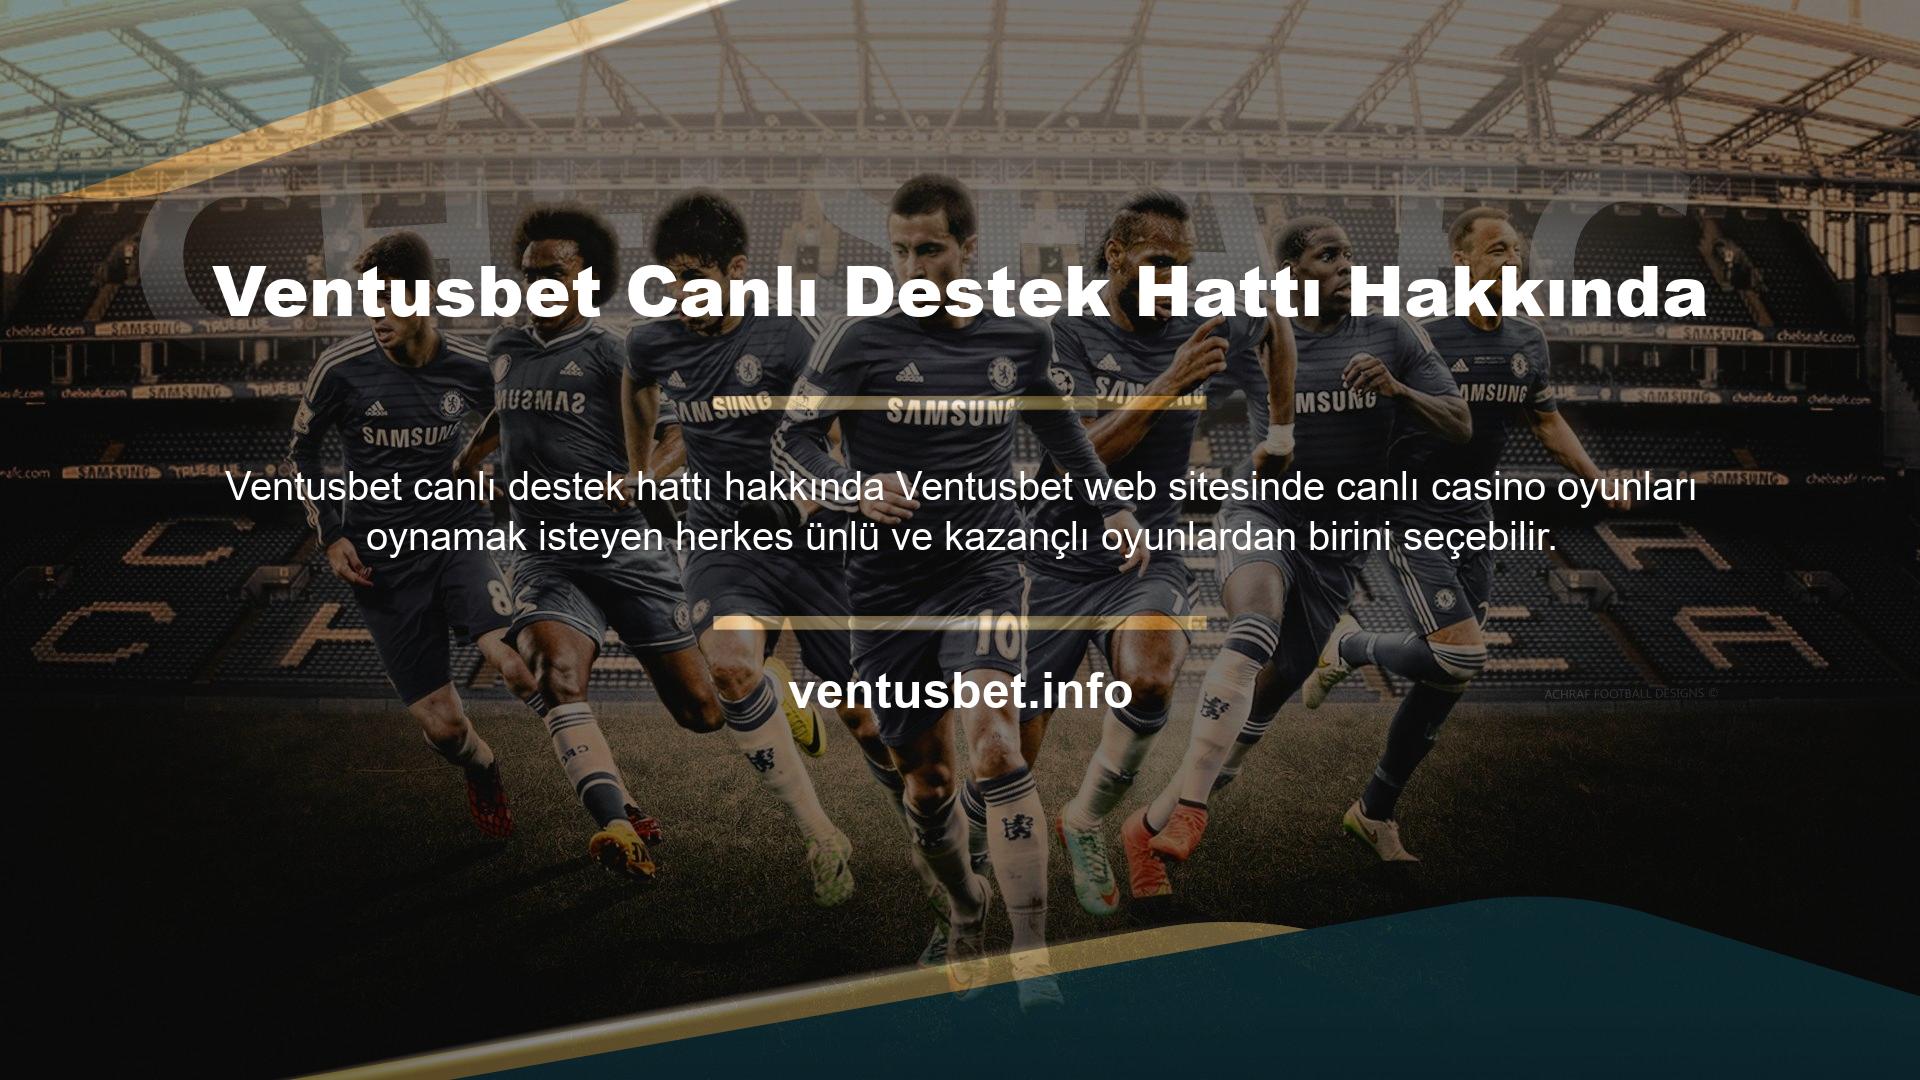 Ventusbet giriş adresi güncellemesi, Türk üyelerin bilgisayarlarında veya mobil cihazlarında canlı oyun oynamasına olanak tanır